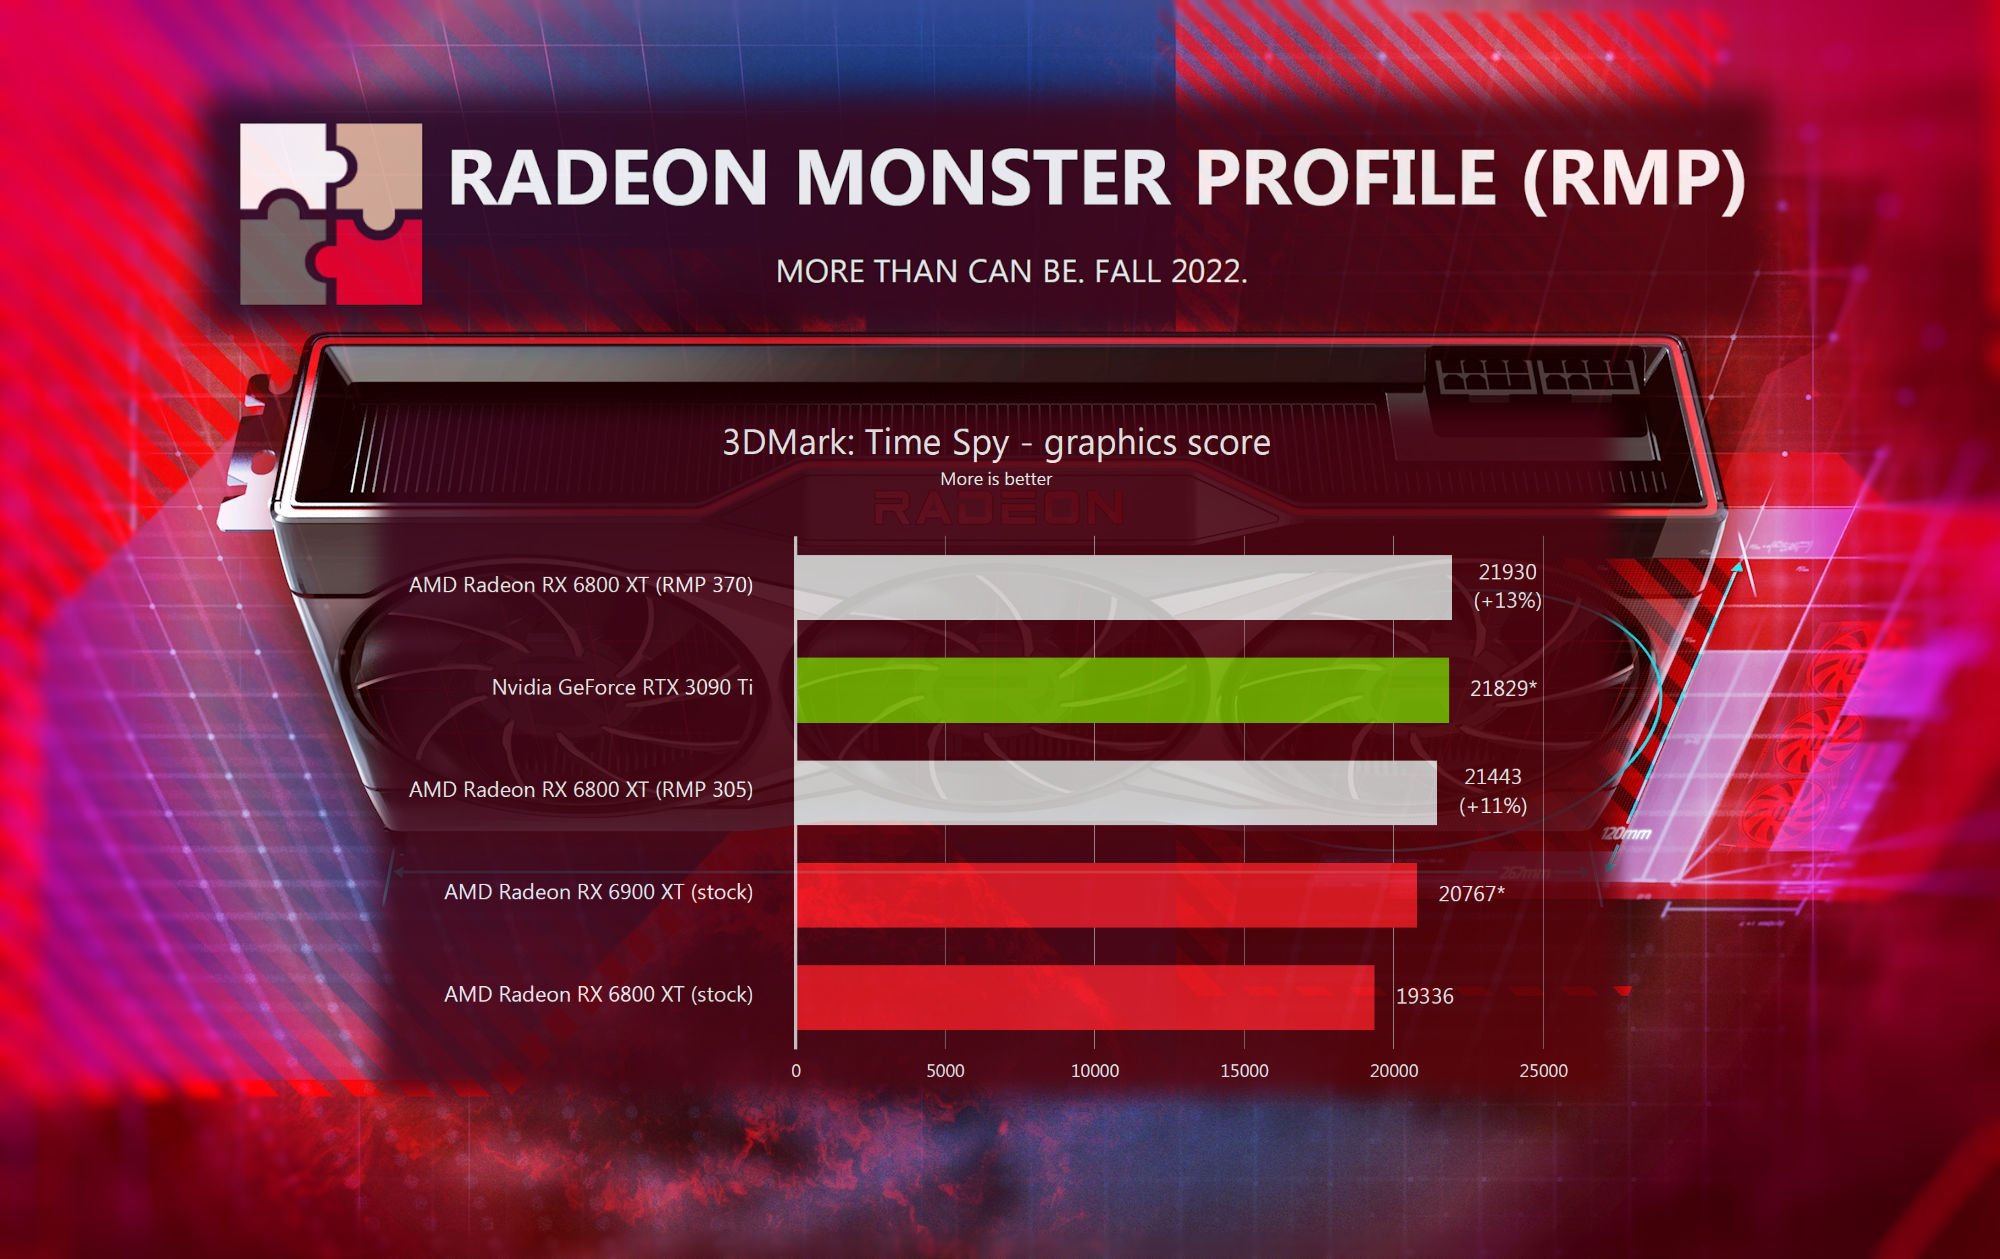 Herramienta de optimización de voltaje/frecuencia "Radeon Monster Profile" para GPU RDNA2 en desarrollo para Hydra